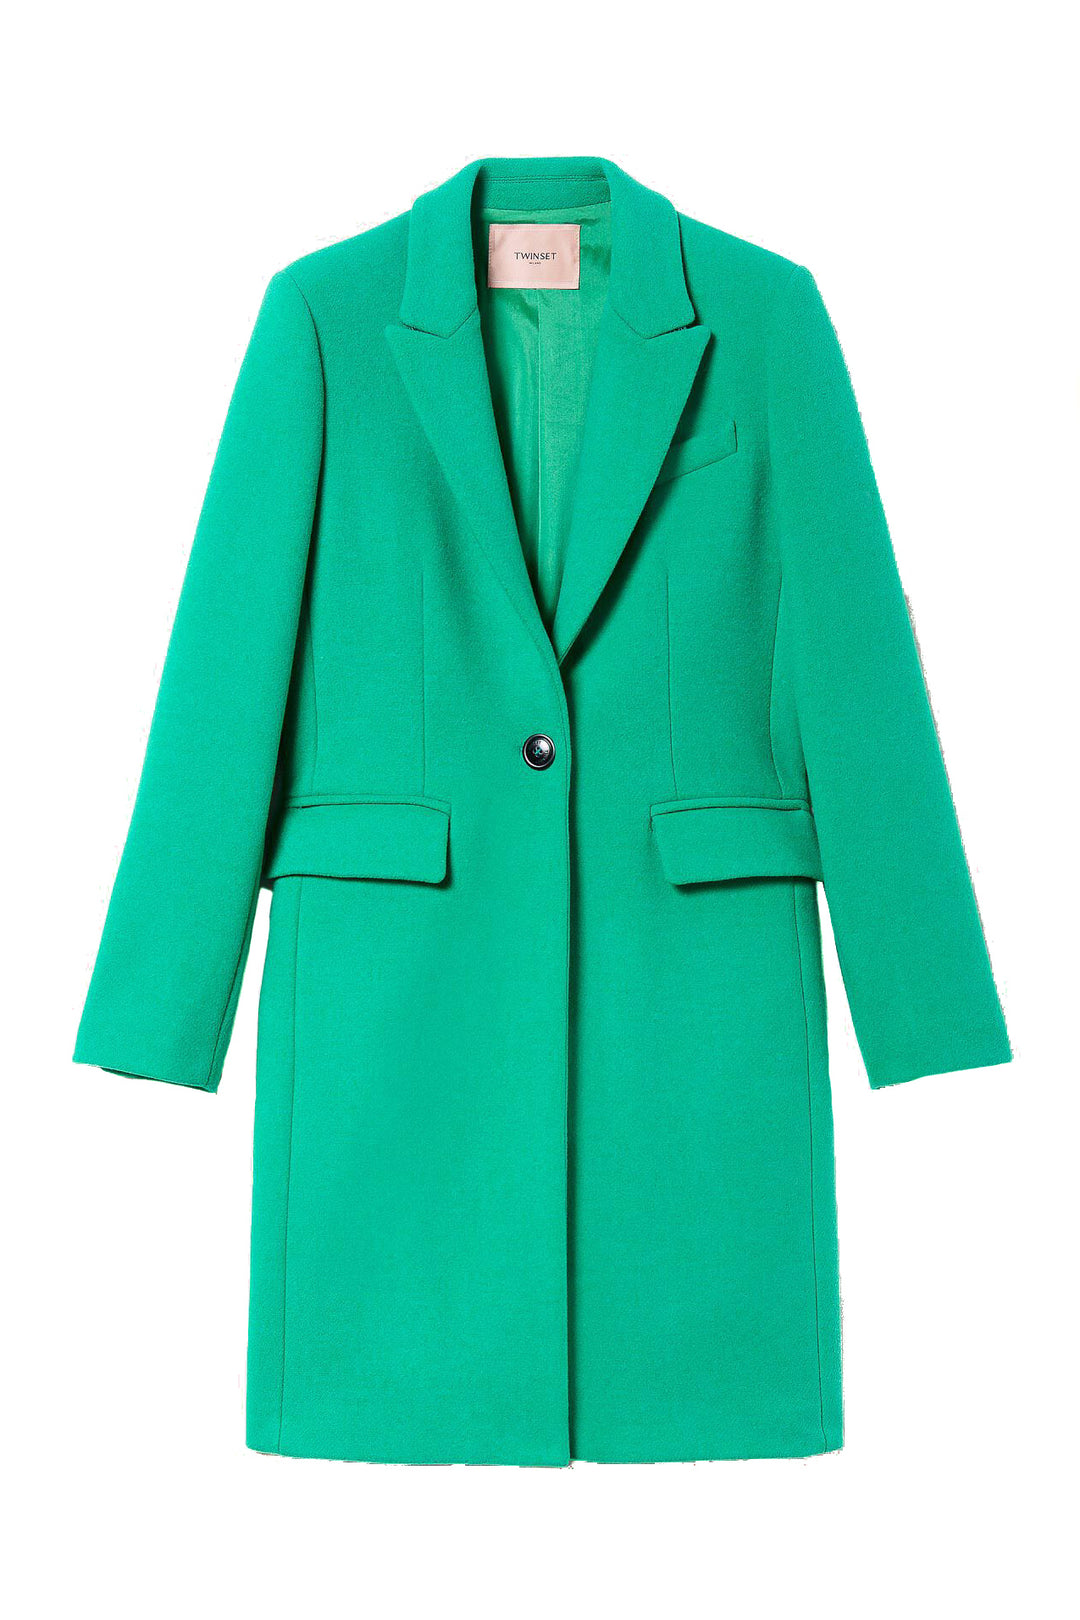 TWINSET Cappotto verde menta in panno misto lana - Mancinelli 1954